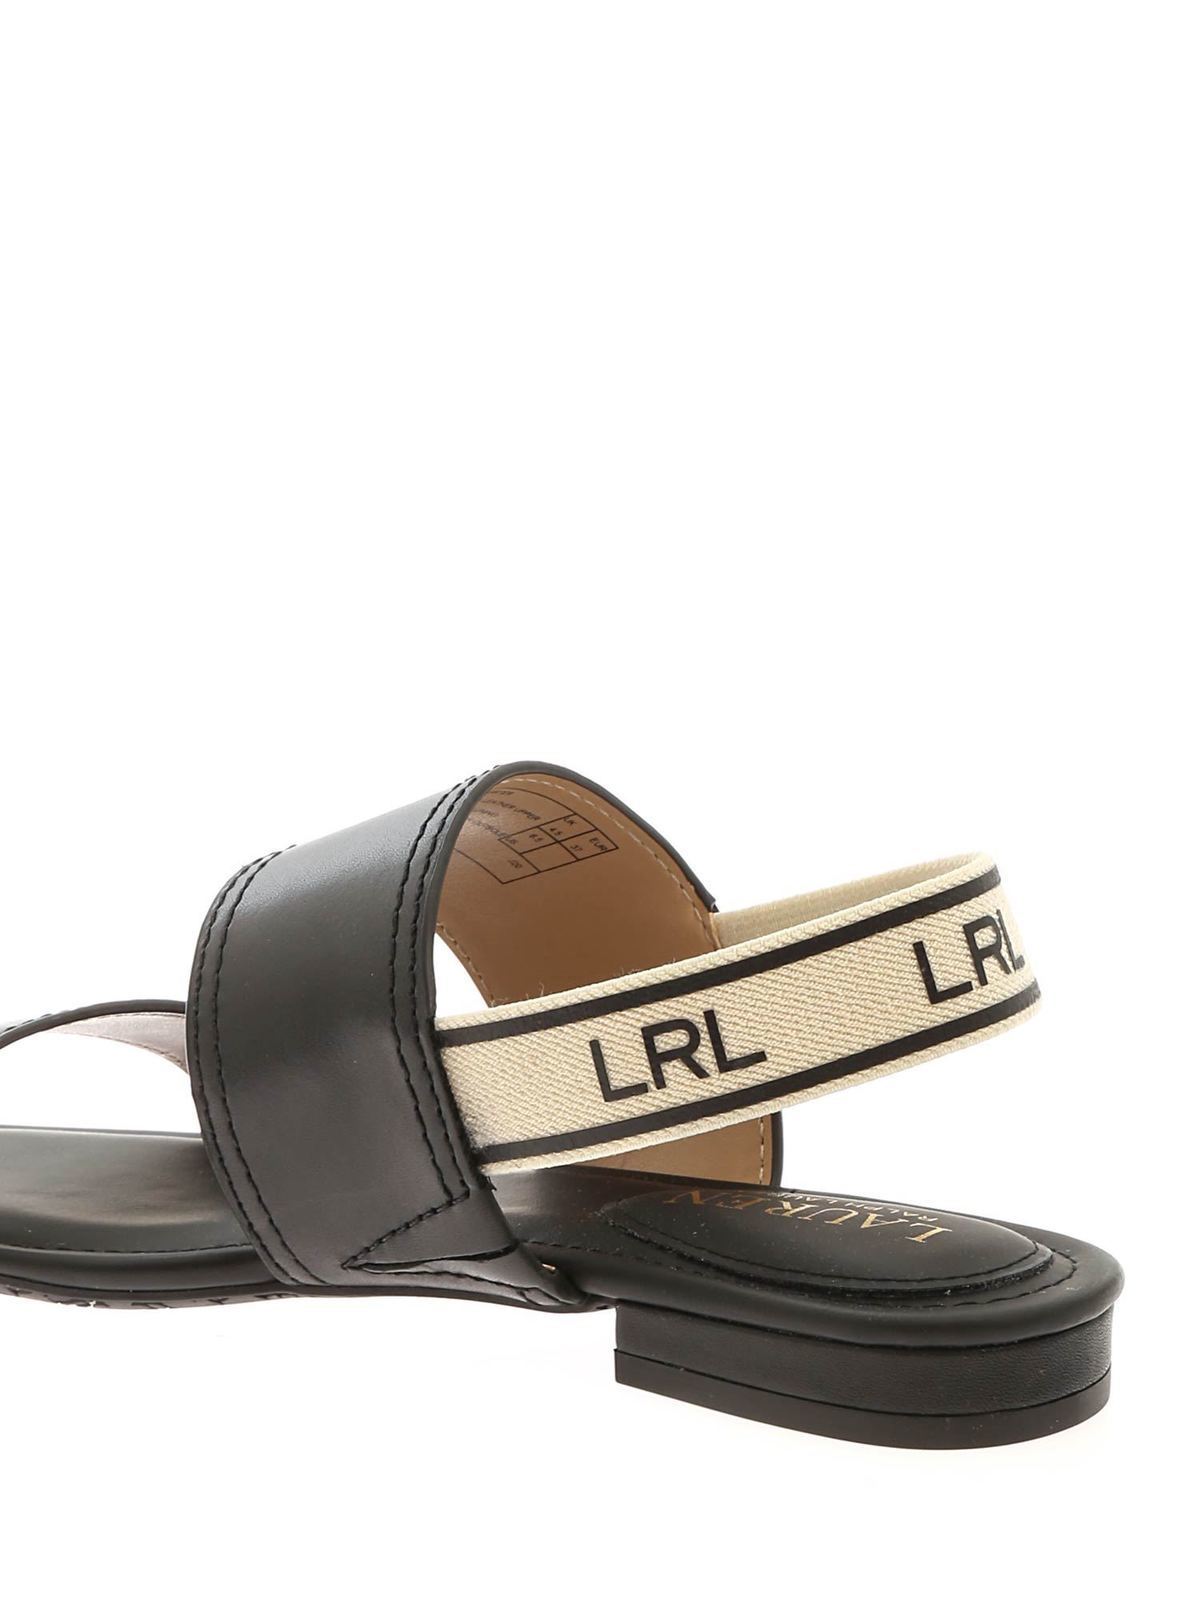 Sandals Lauren Ralph Lauren - Karter sandals in black - 802835052001